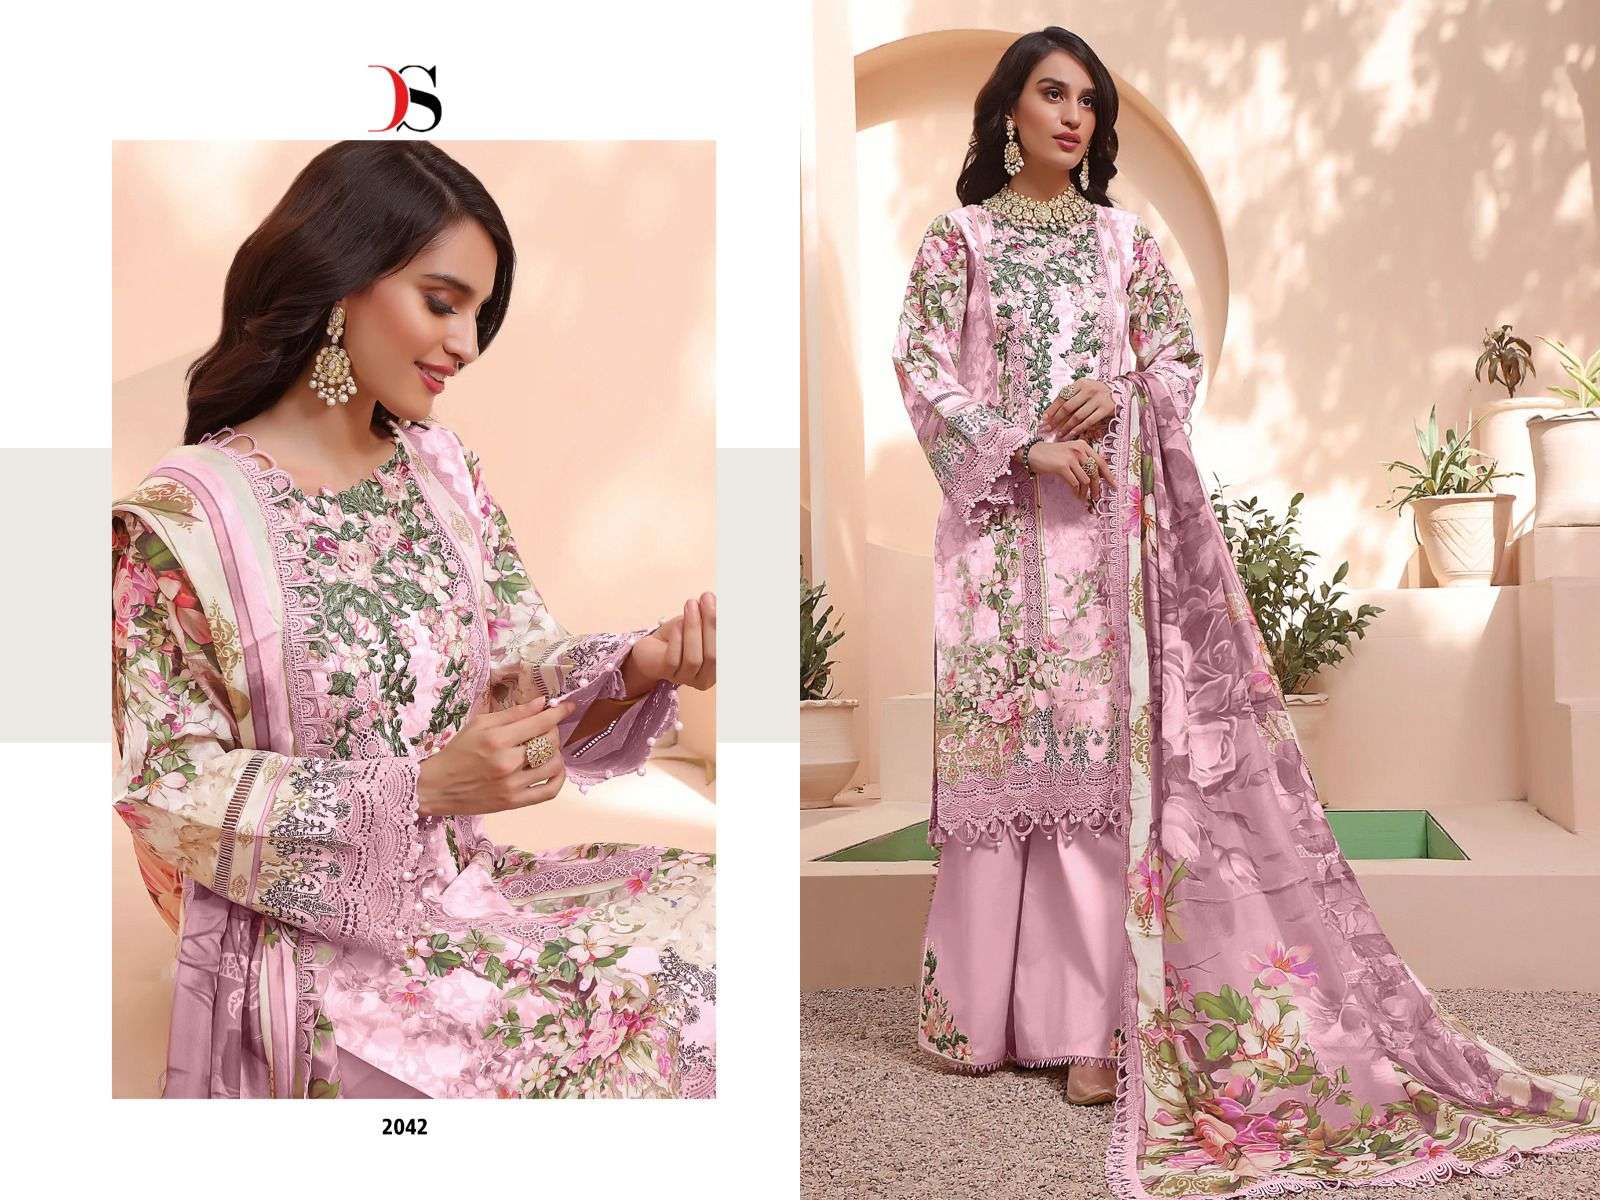 deepsy suits queens court remix nx pure cotton designer pakistani salwar suits design 2023 